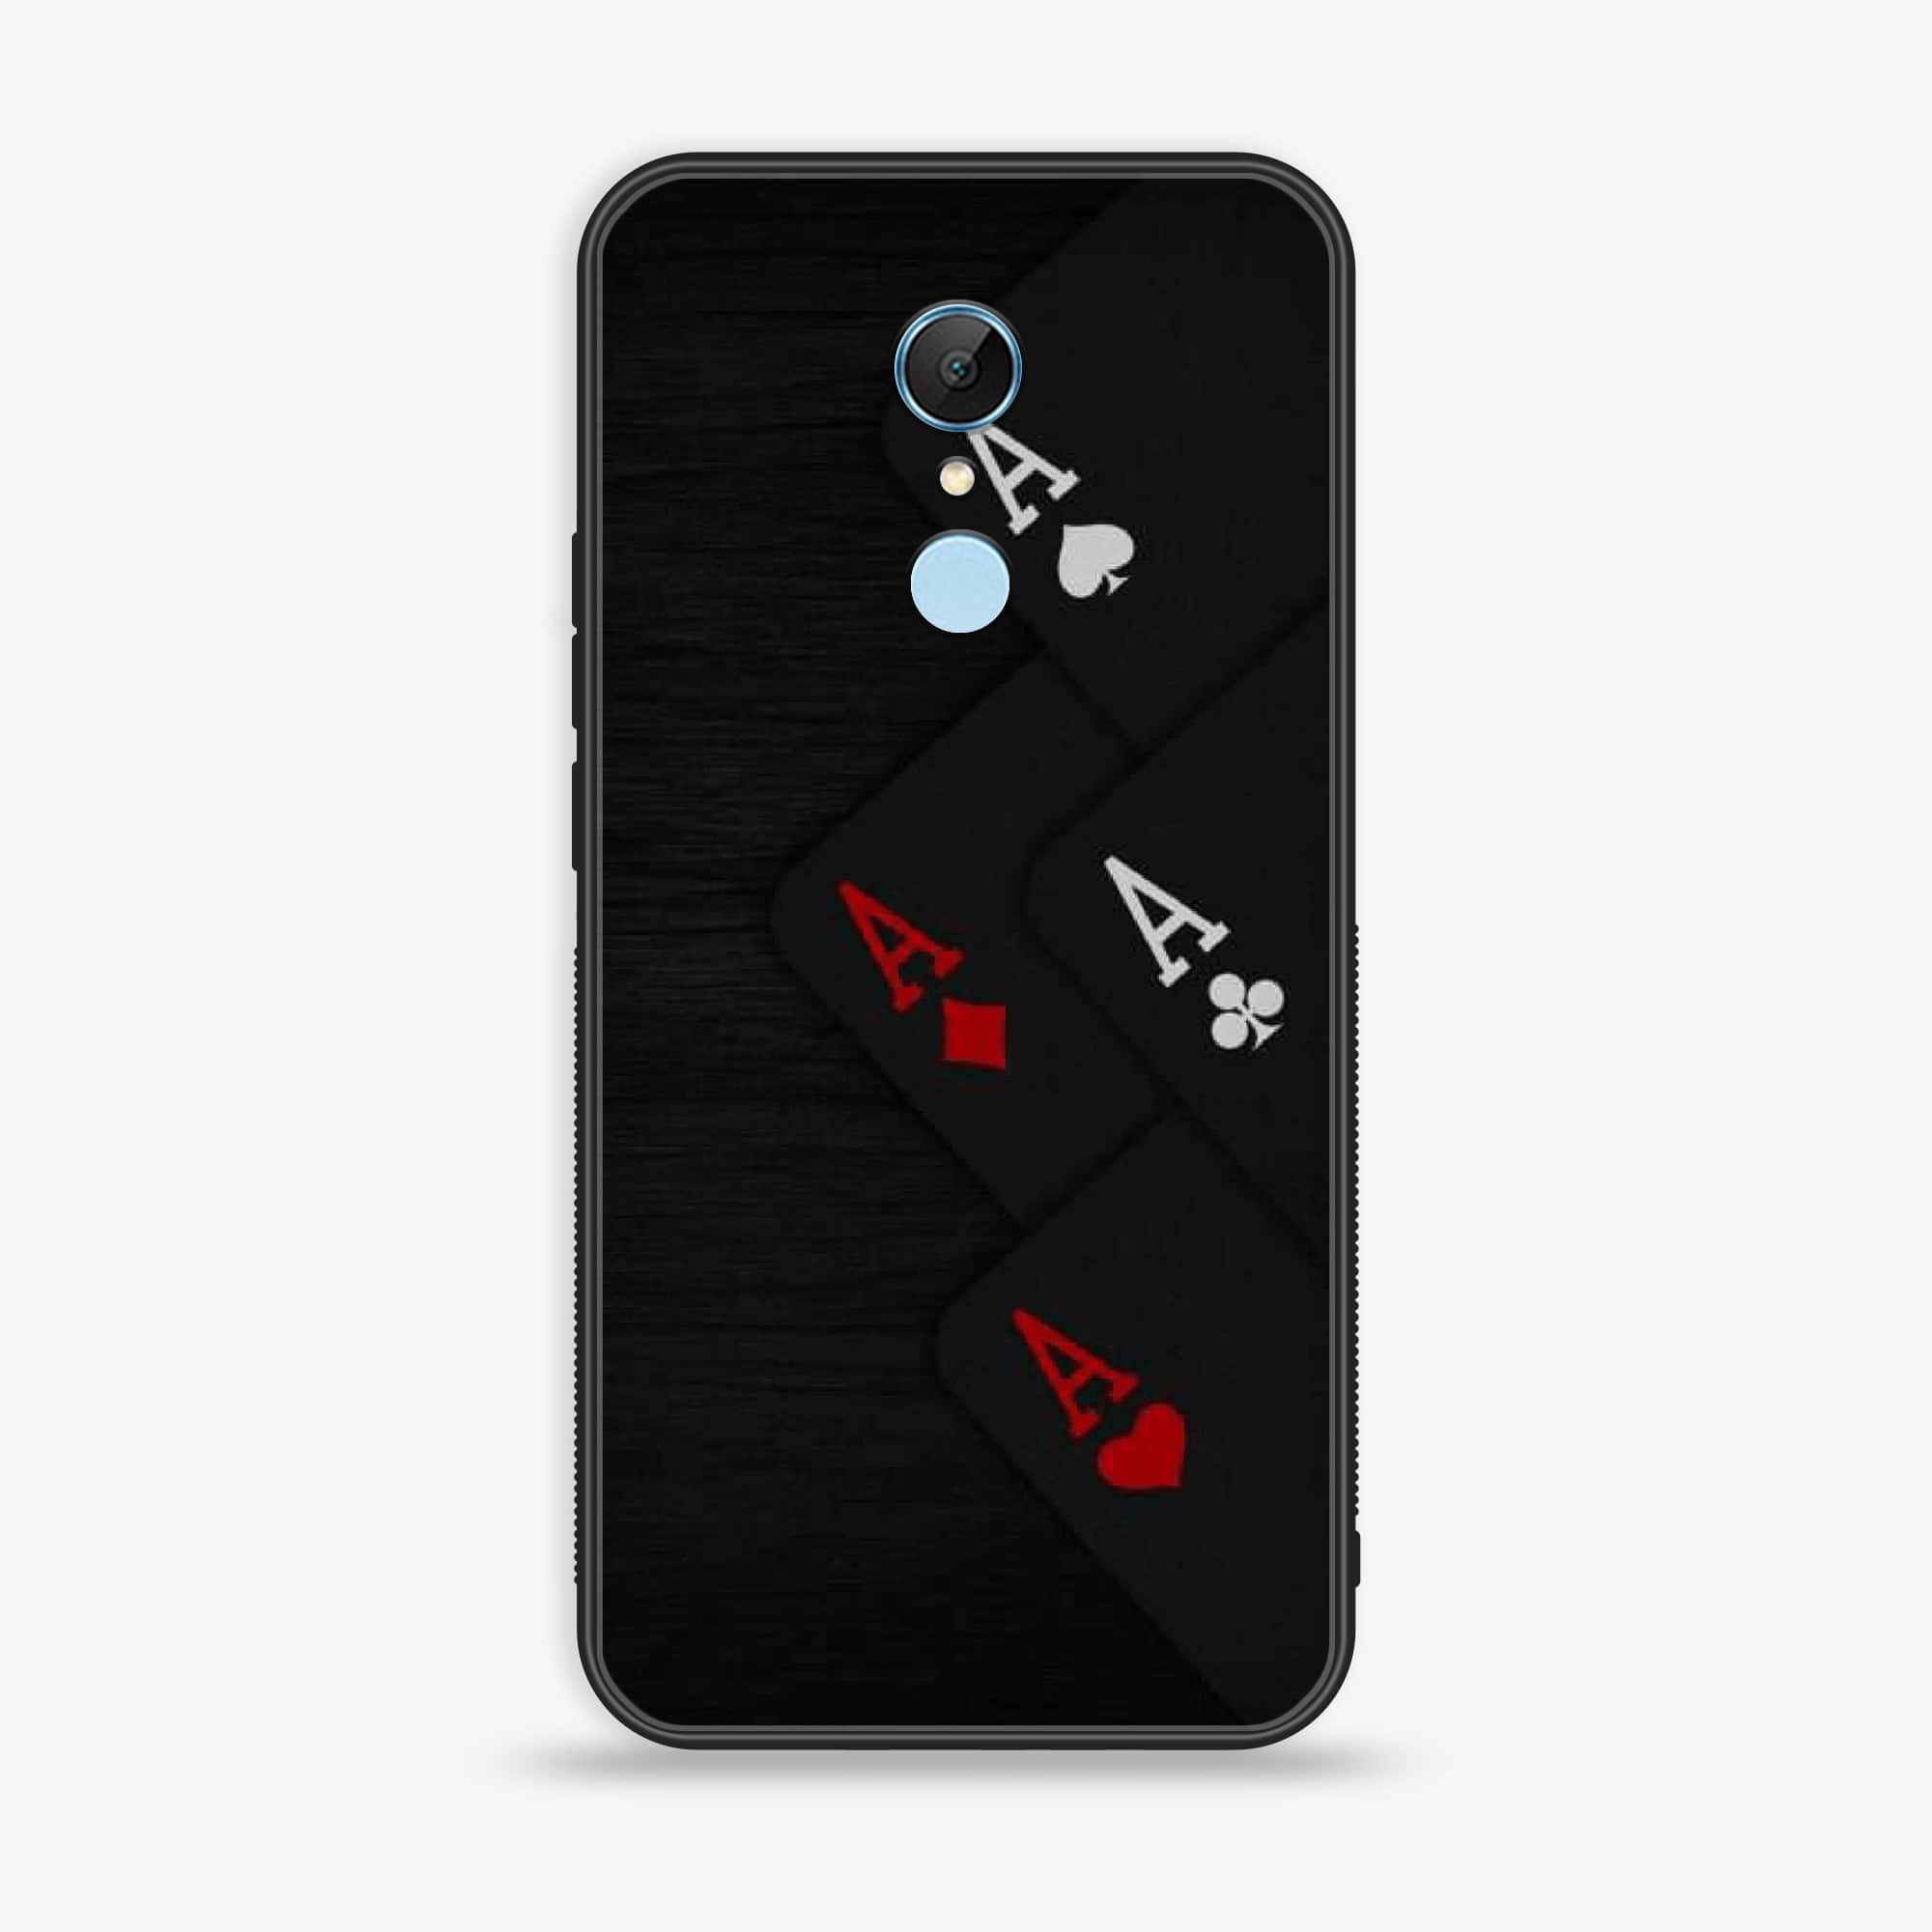 Xiaomi Redmi 5 - Black Art Series - Premium Printed Glass soft Bumper shock Proof Case